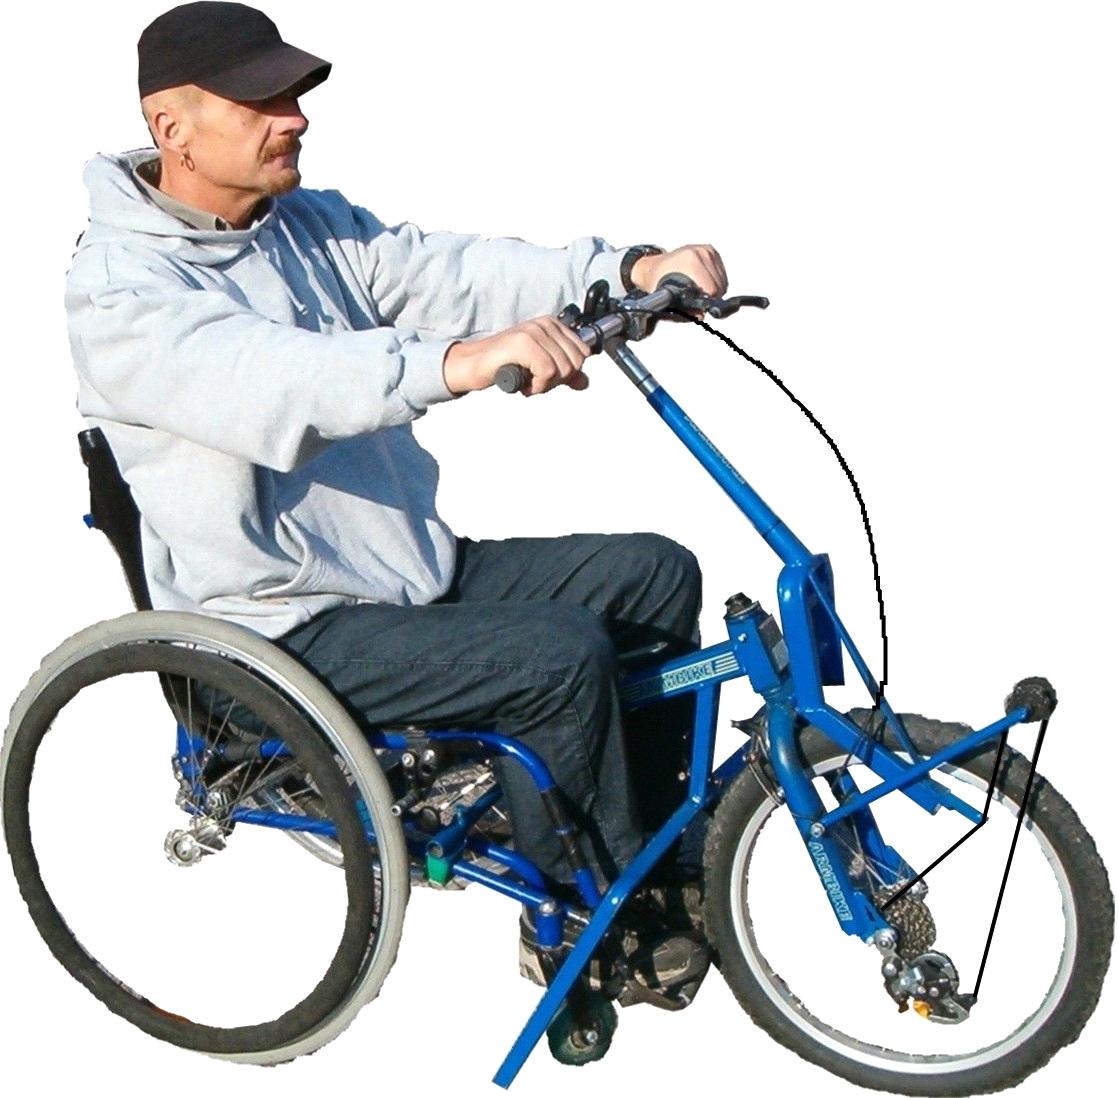 Cykeln passar rullstolar med runda ram/rör och plattovala rör där fästena och ska sitta.